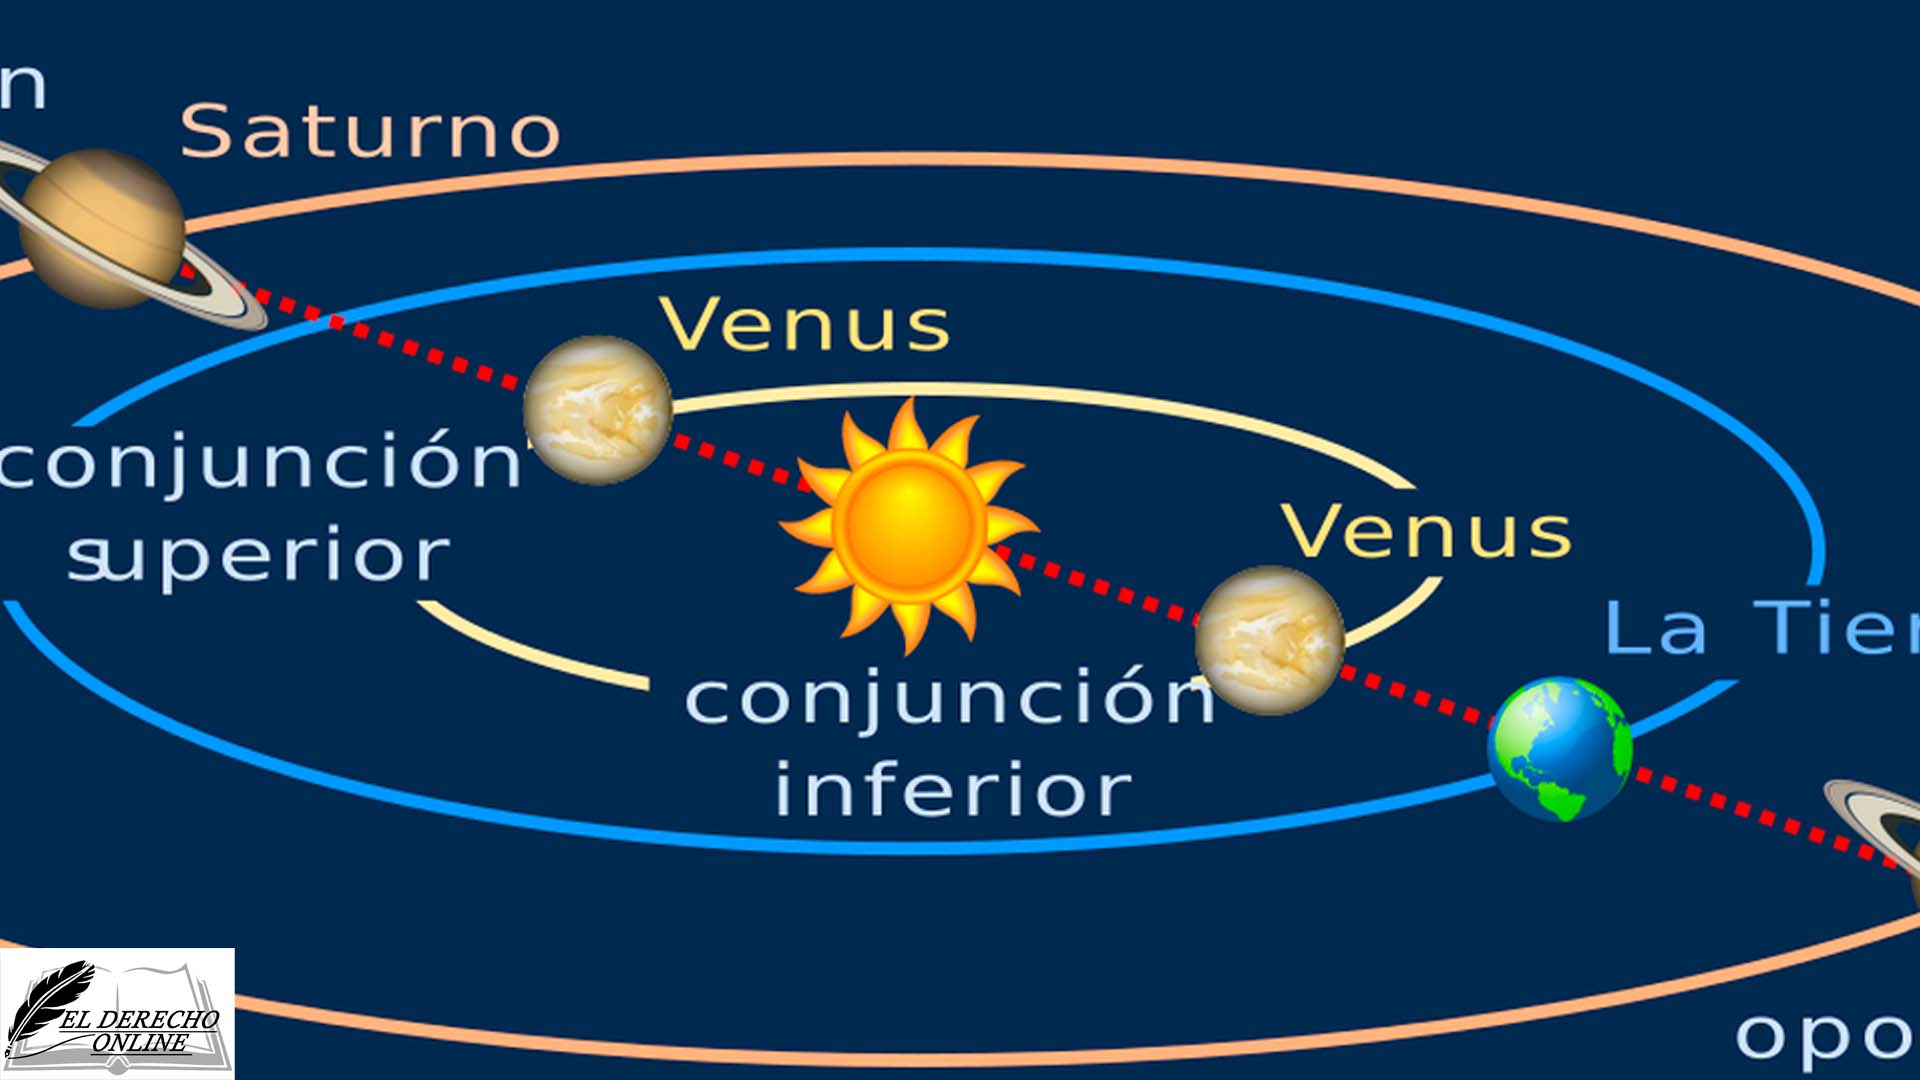 ¿Qué son las conjunciones del Sol?